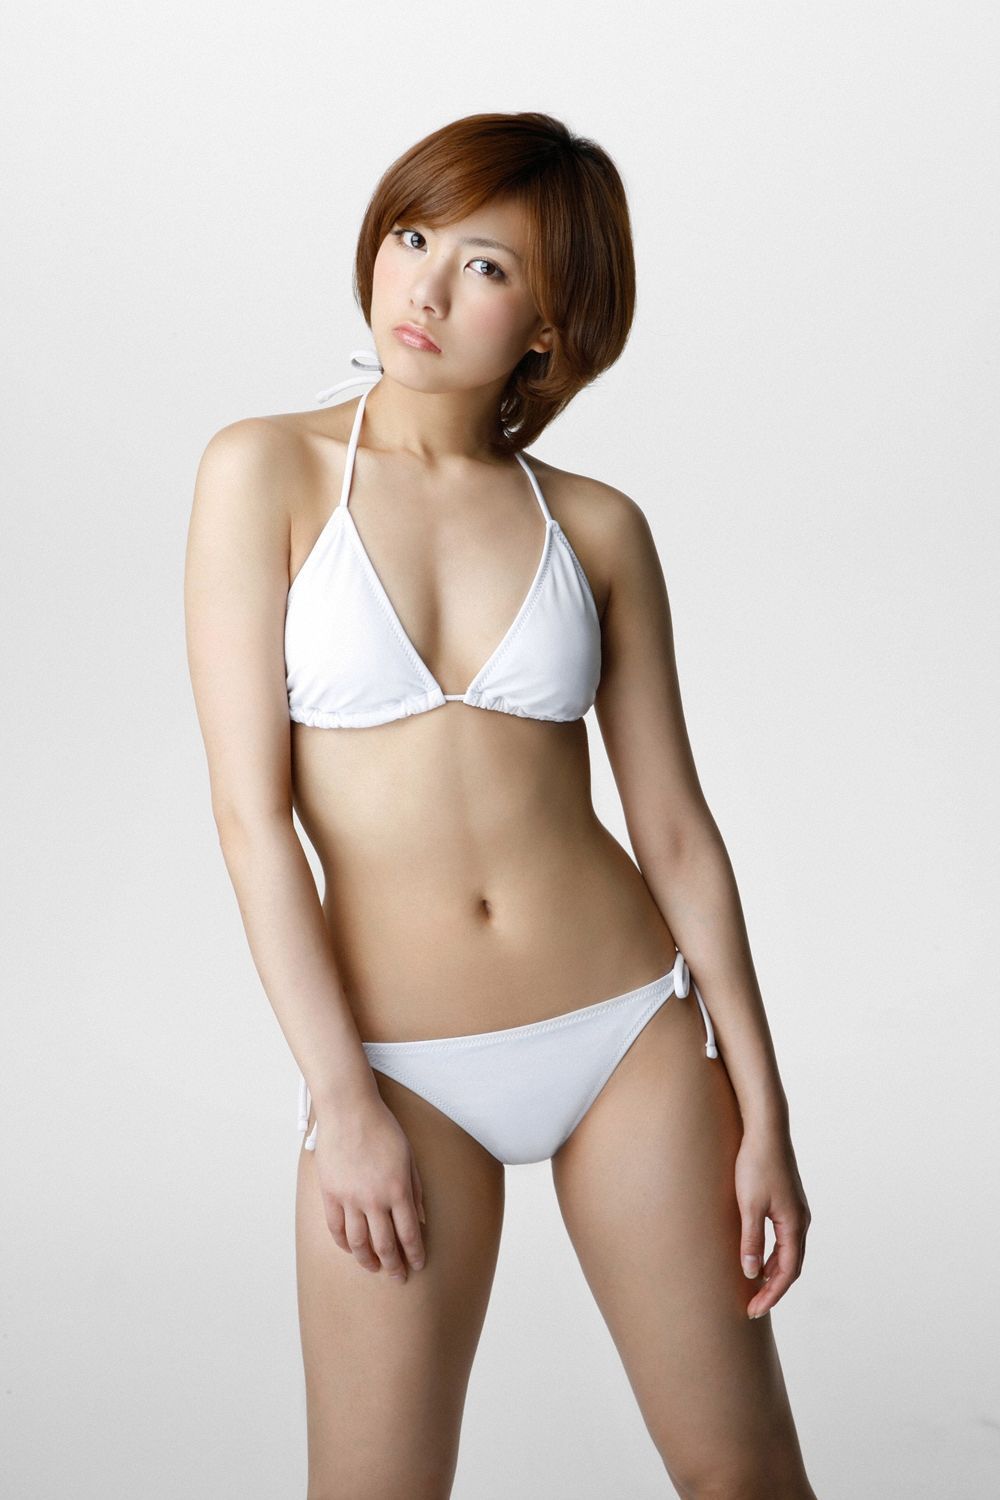 Sae Miyazawa Sexy and Hottest Photos , Latest Pics